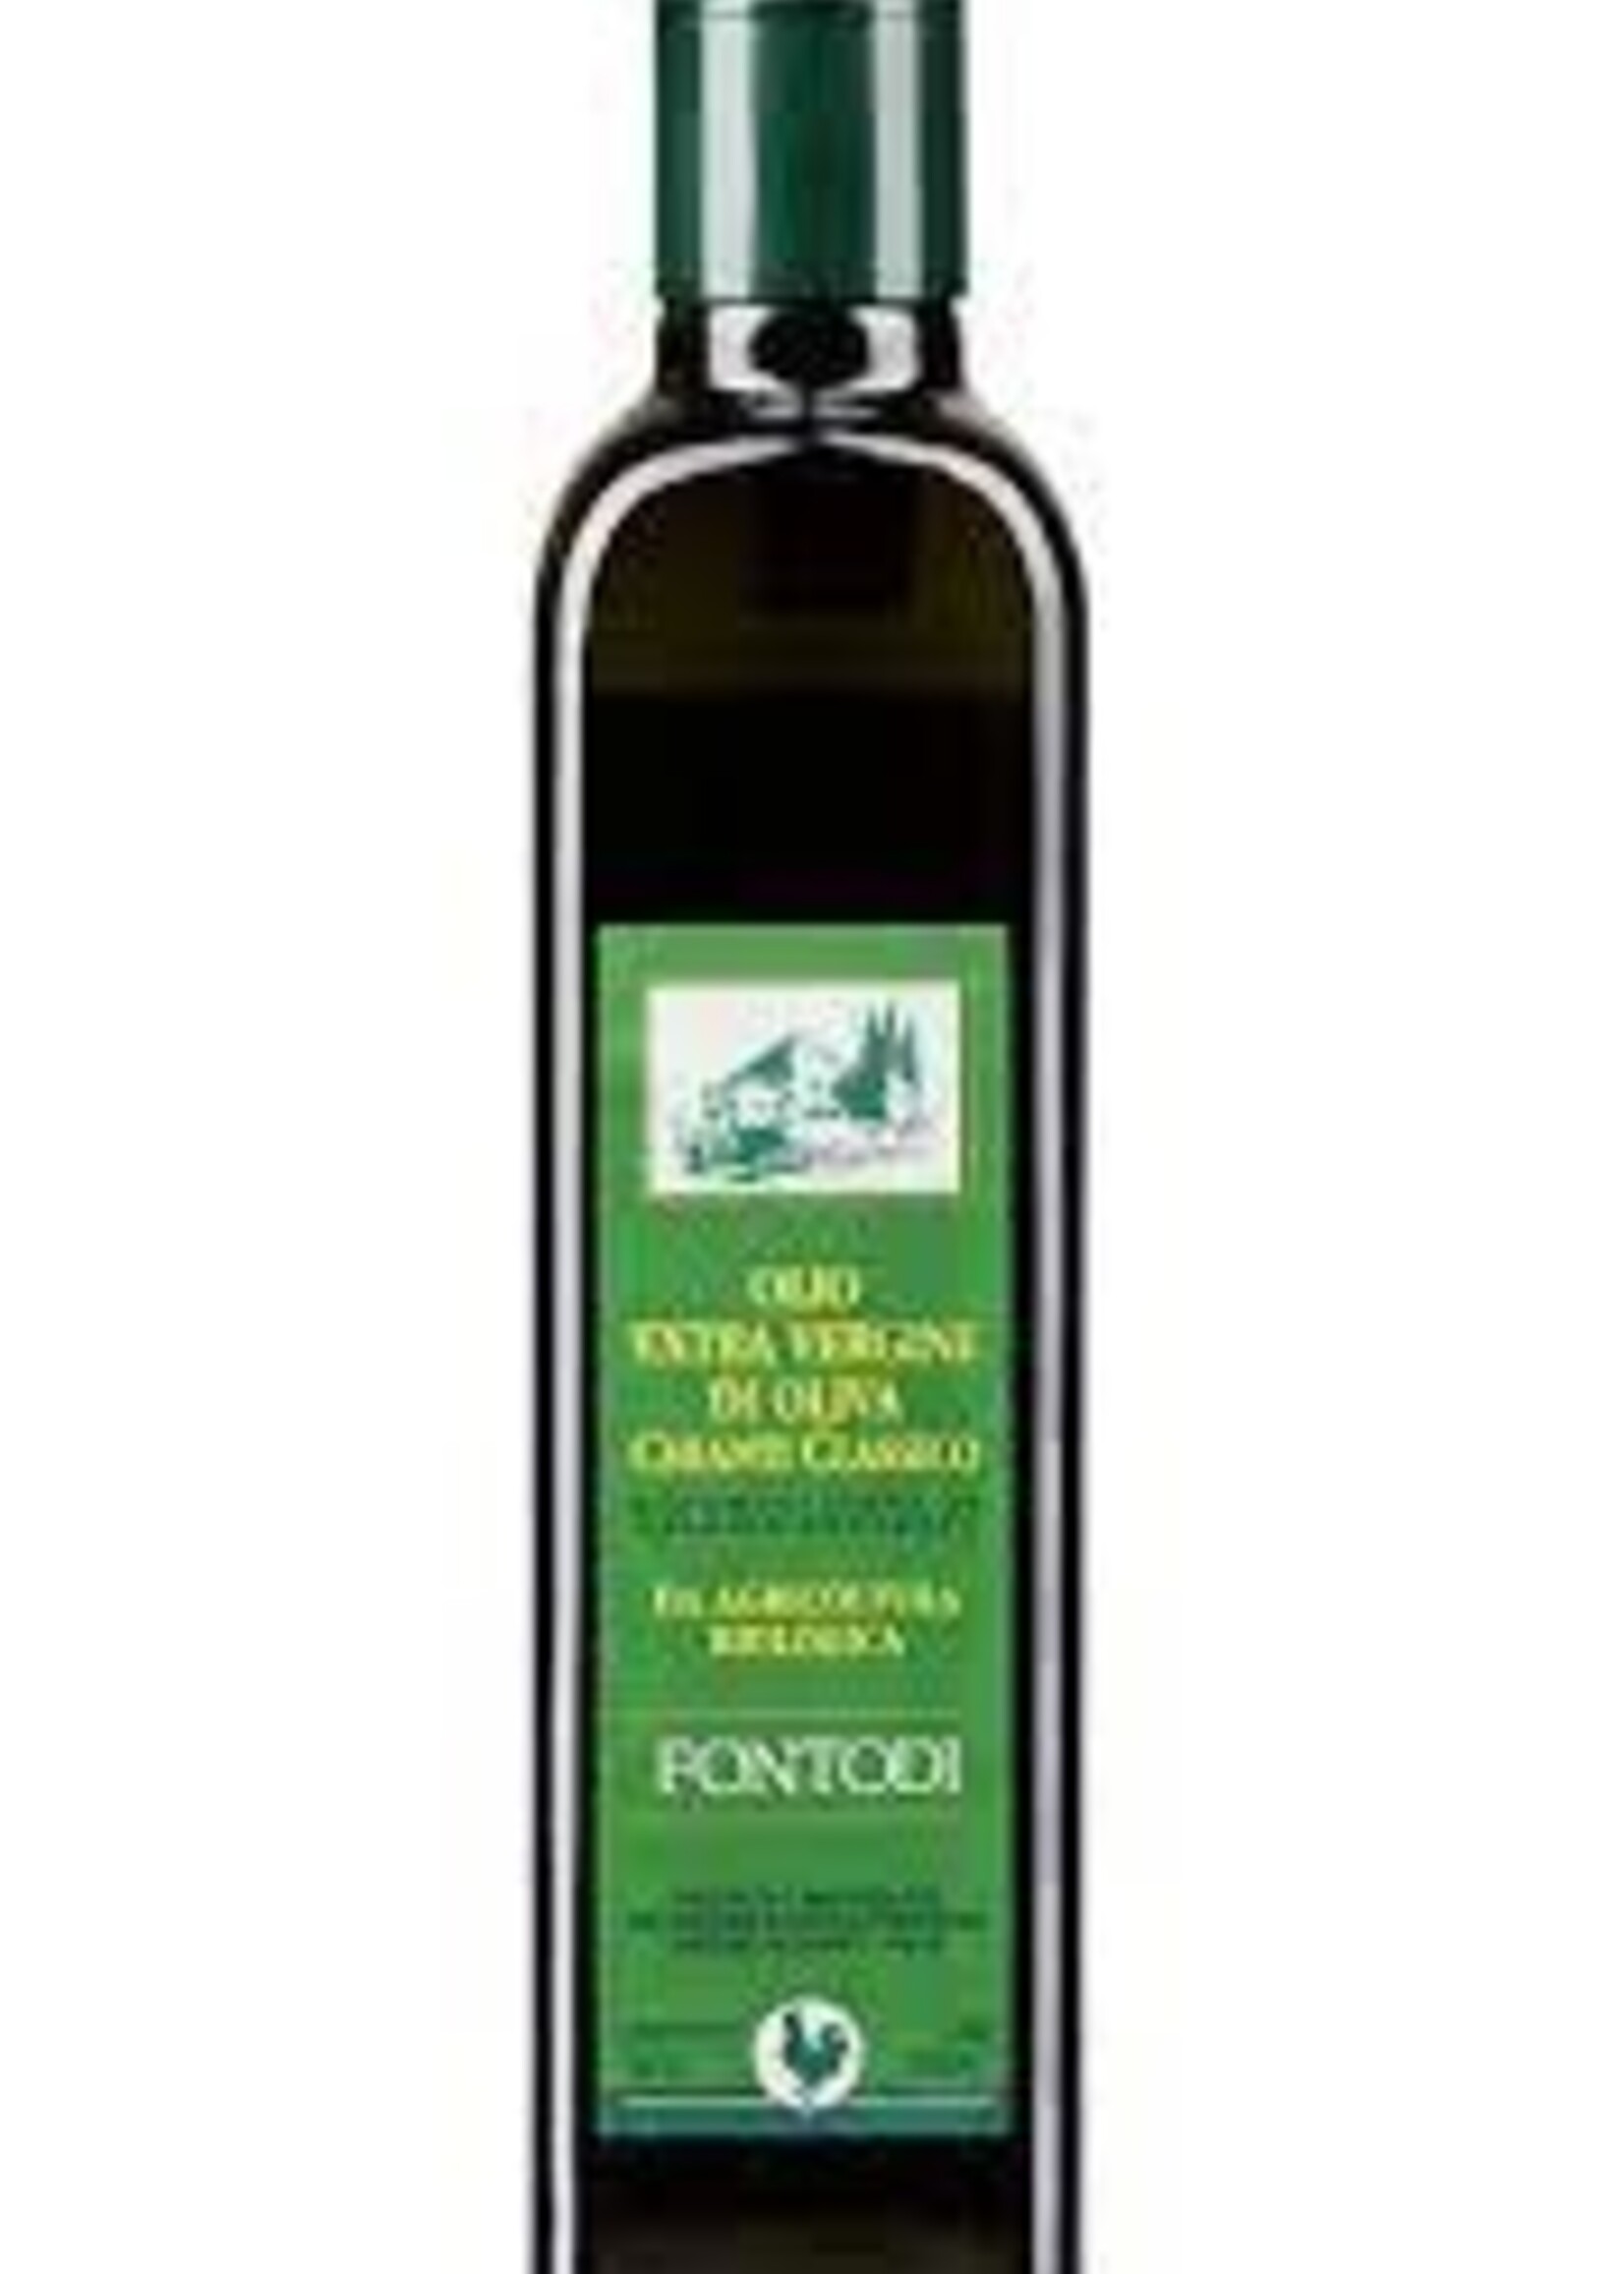 Fontodi Organic Extra Virgin Olive Oil di Chianti Classico 500ML